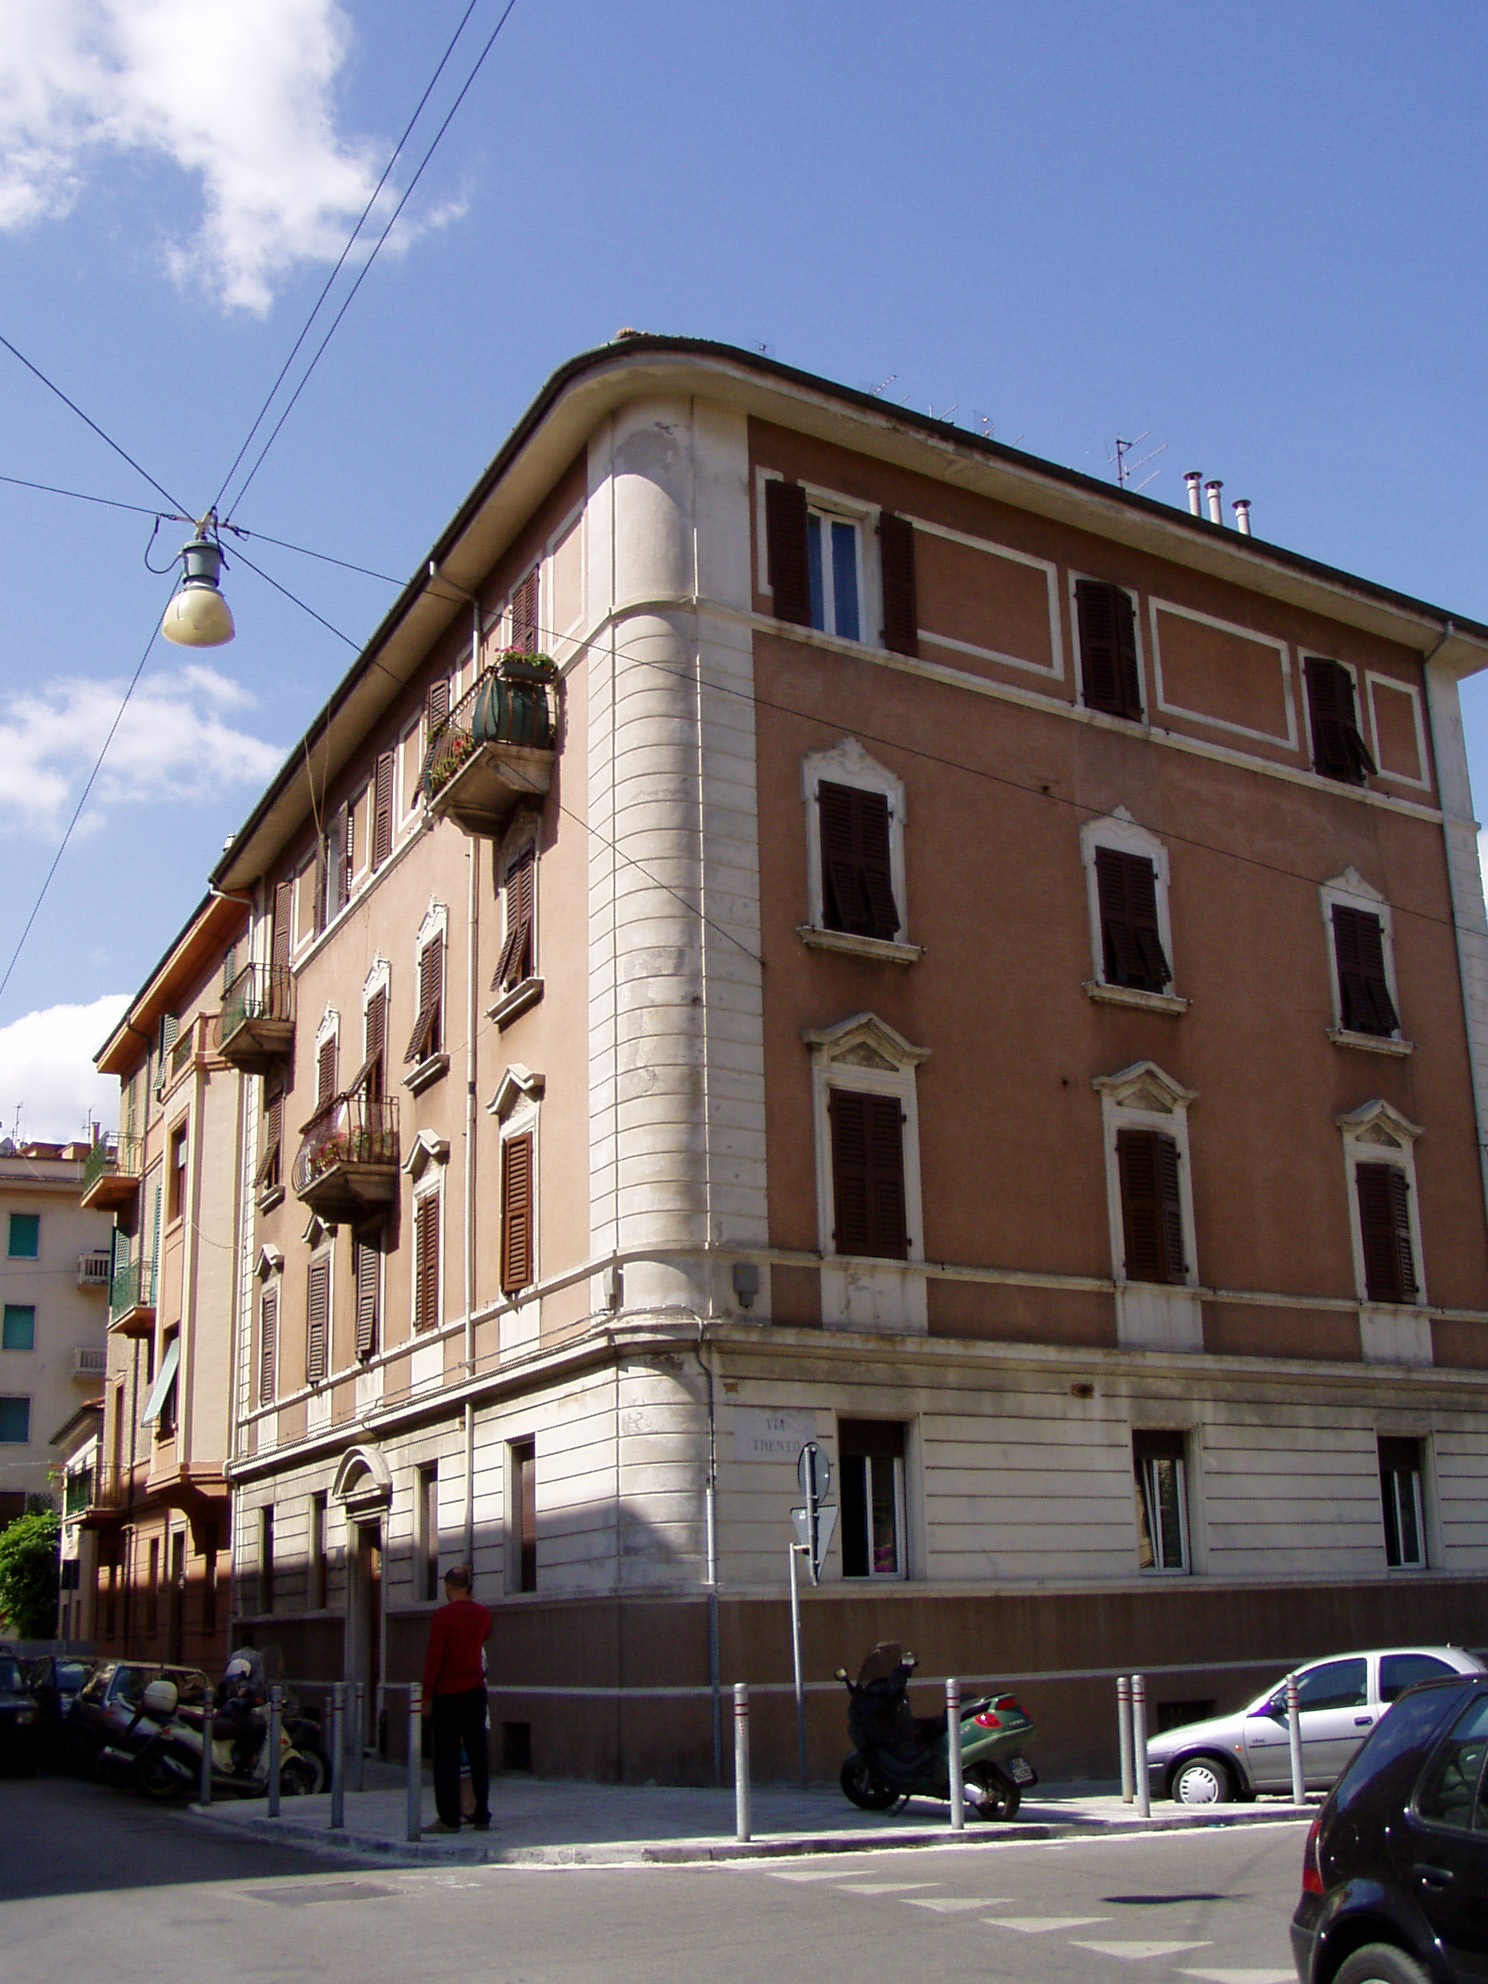 Palazzo in stile neoclassico (palazzo, di appartamenti) - Ancona (AN) 